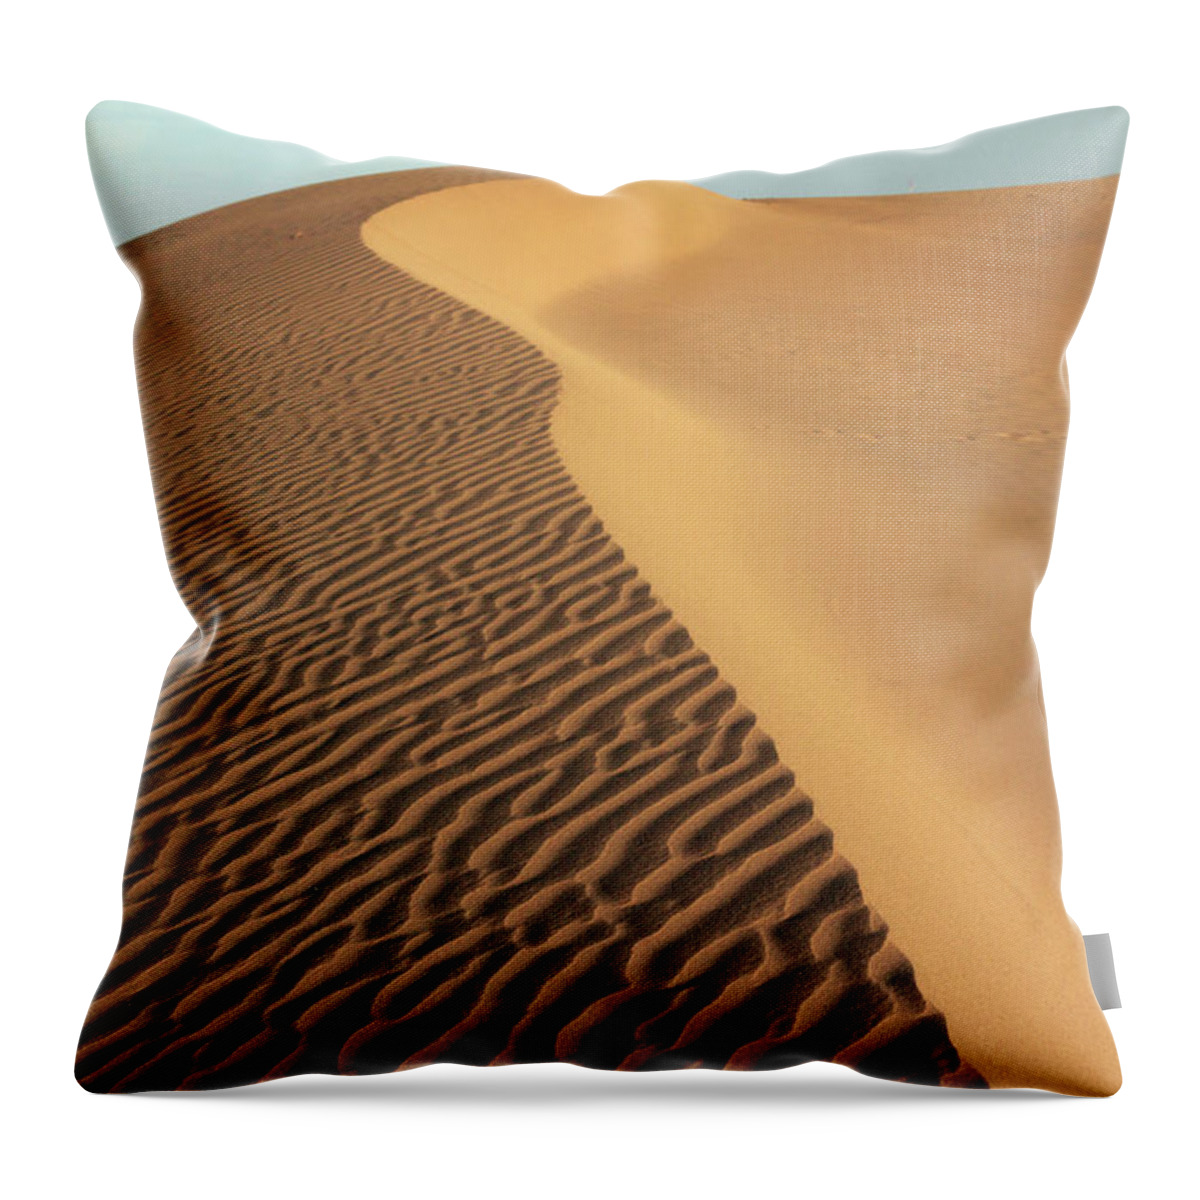 Jaisalmer Throw Pillow featuring the photograph Thar Desert, Jaisalmer #1 by Milind Torney